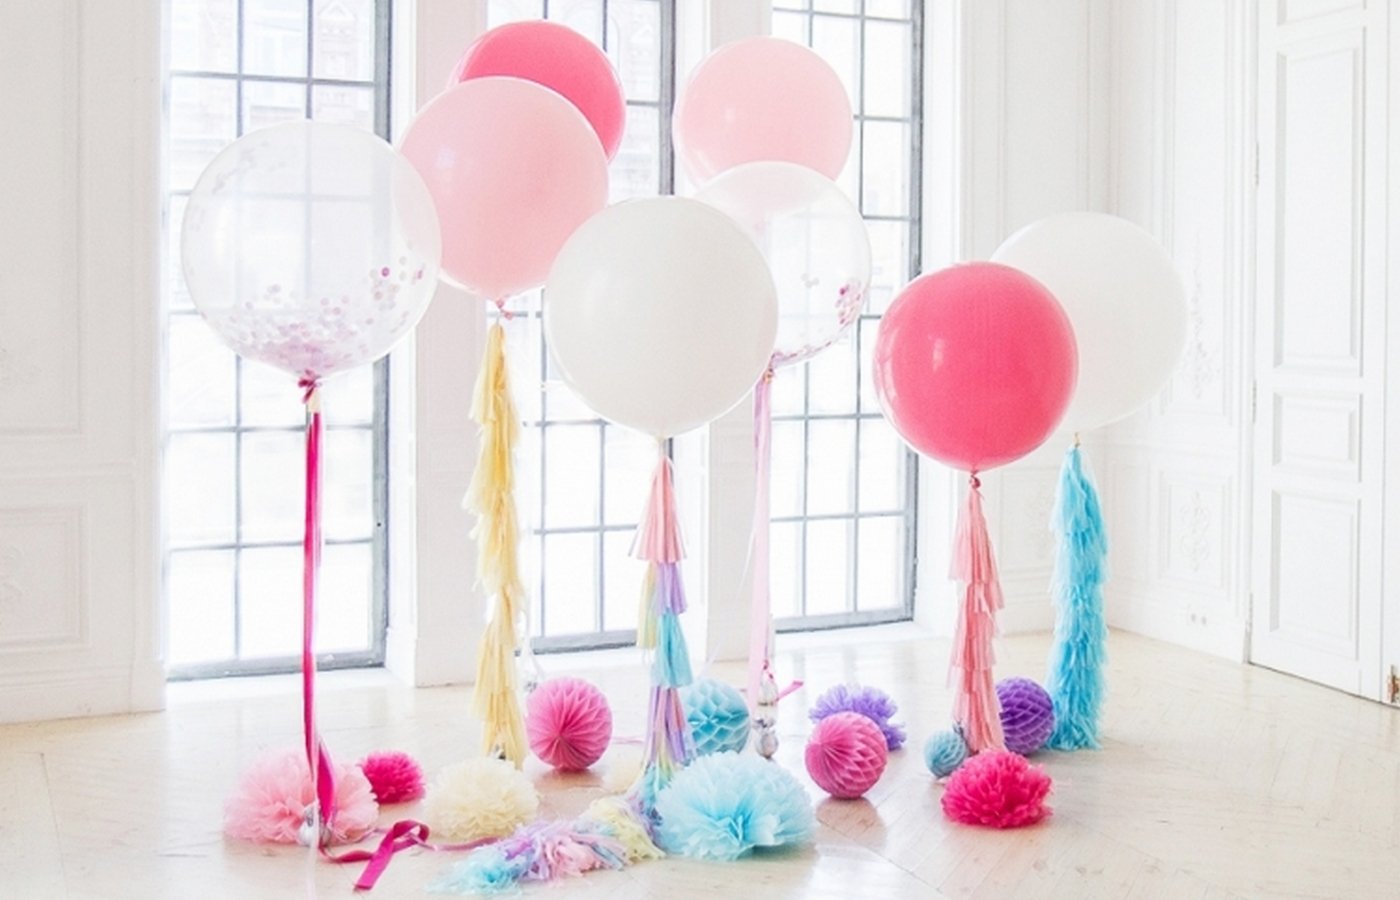 Украшение комнаты шарами на день рождения девочки